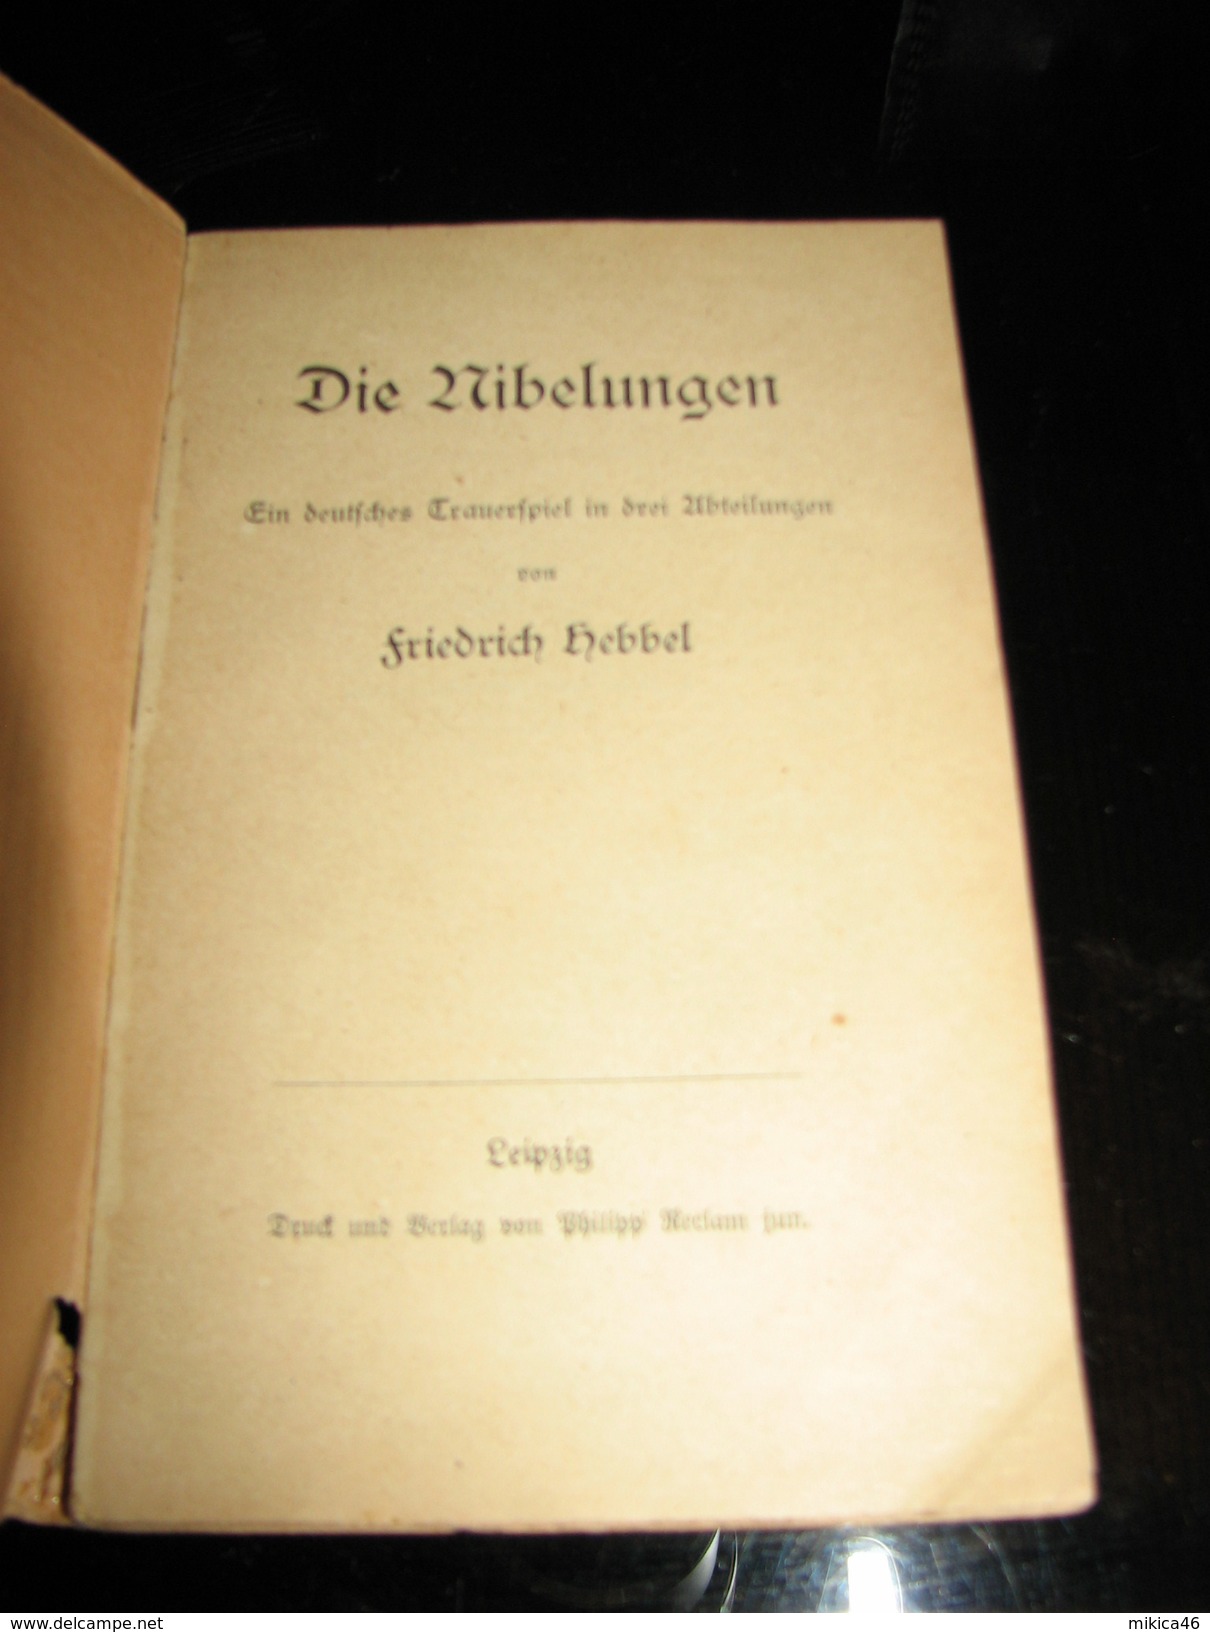 Die Nibelungen - Old Books